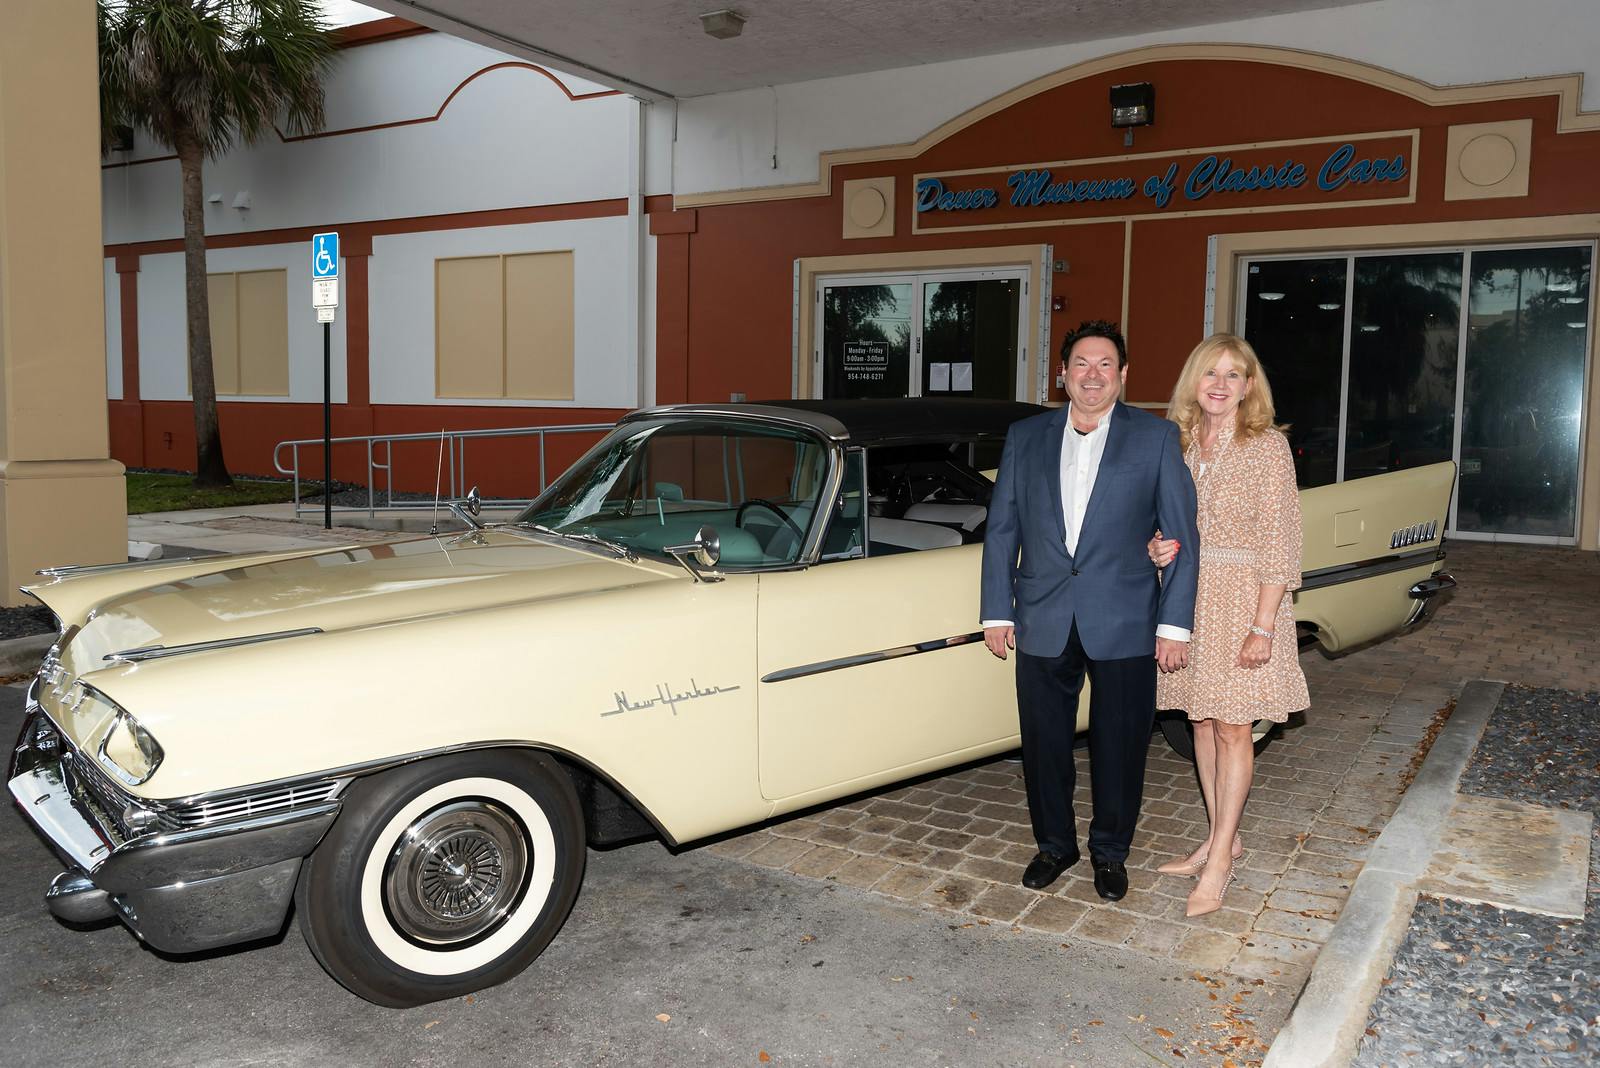 sunrise florida dauer museum of classic cars open to public